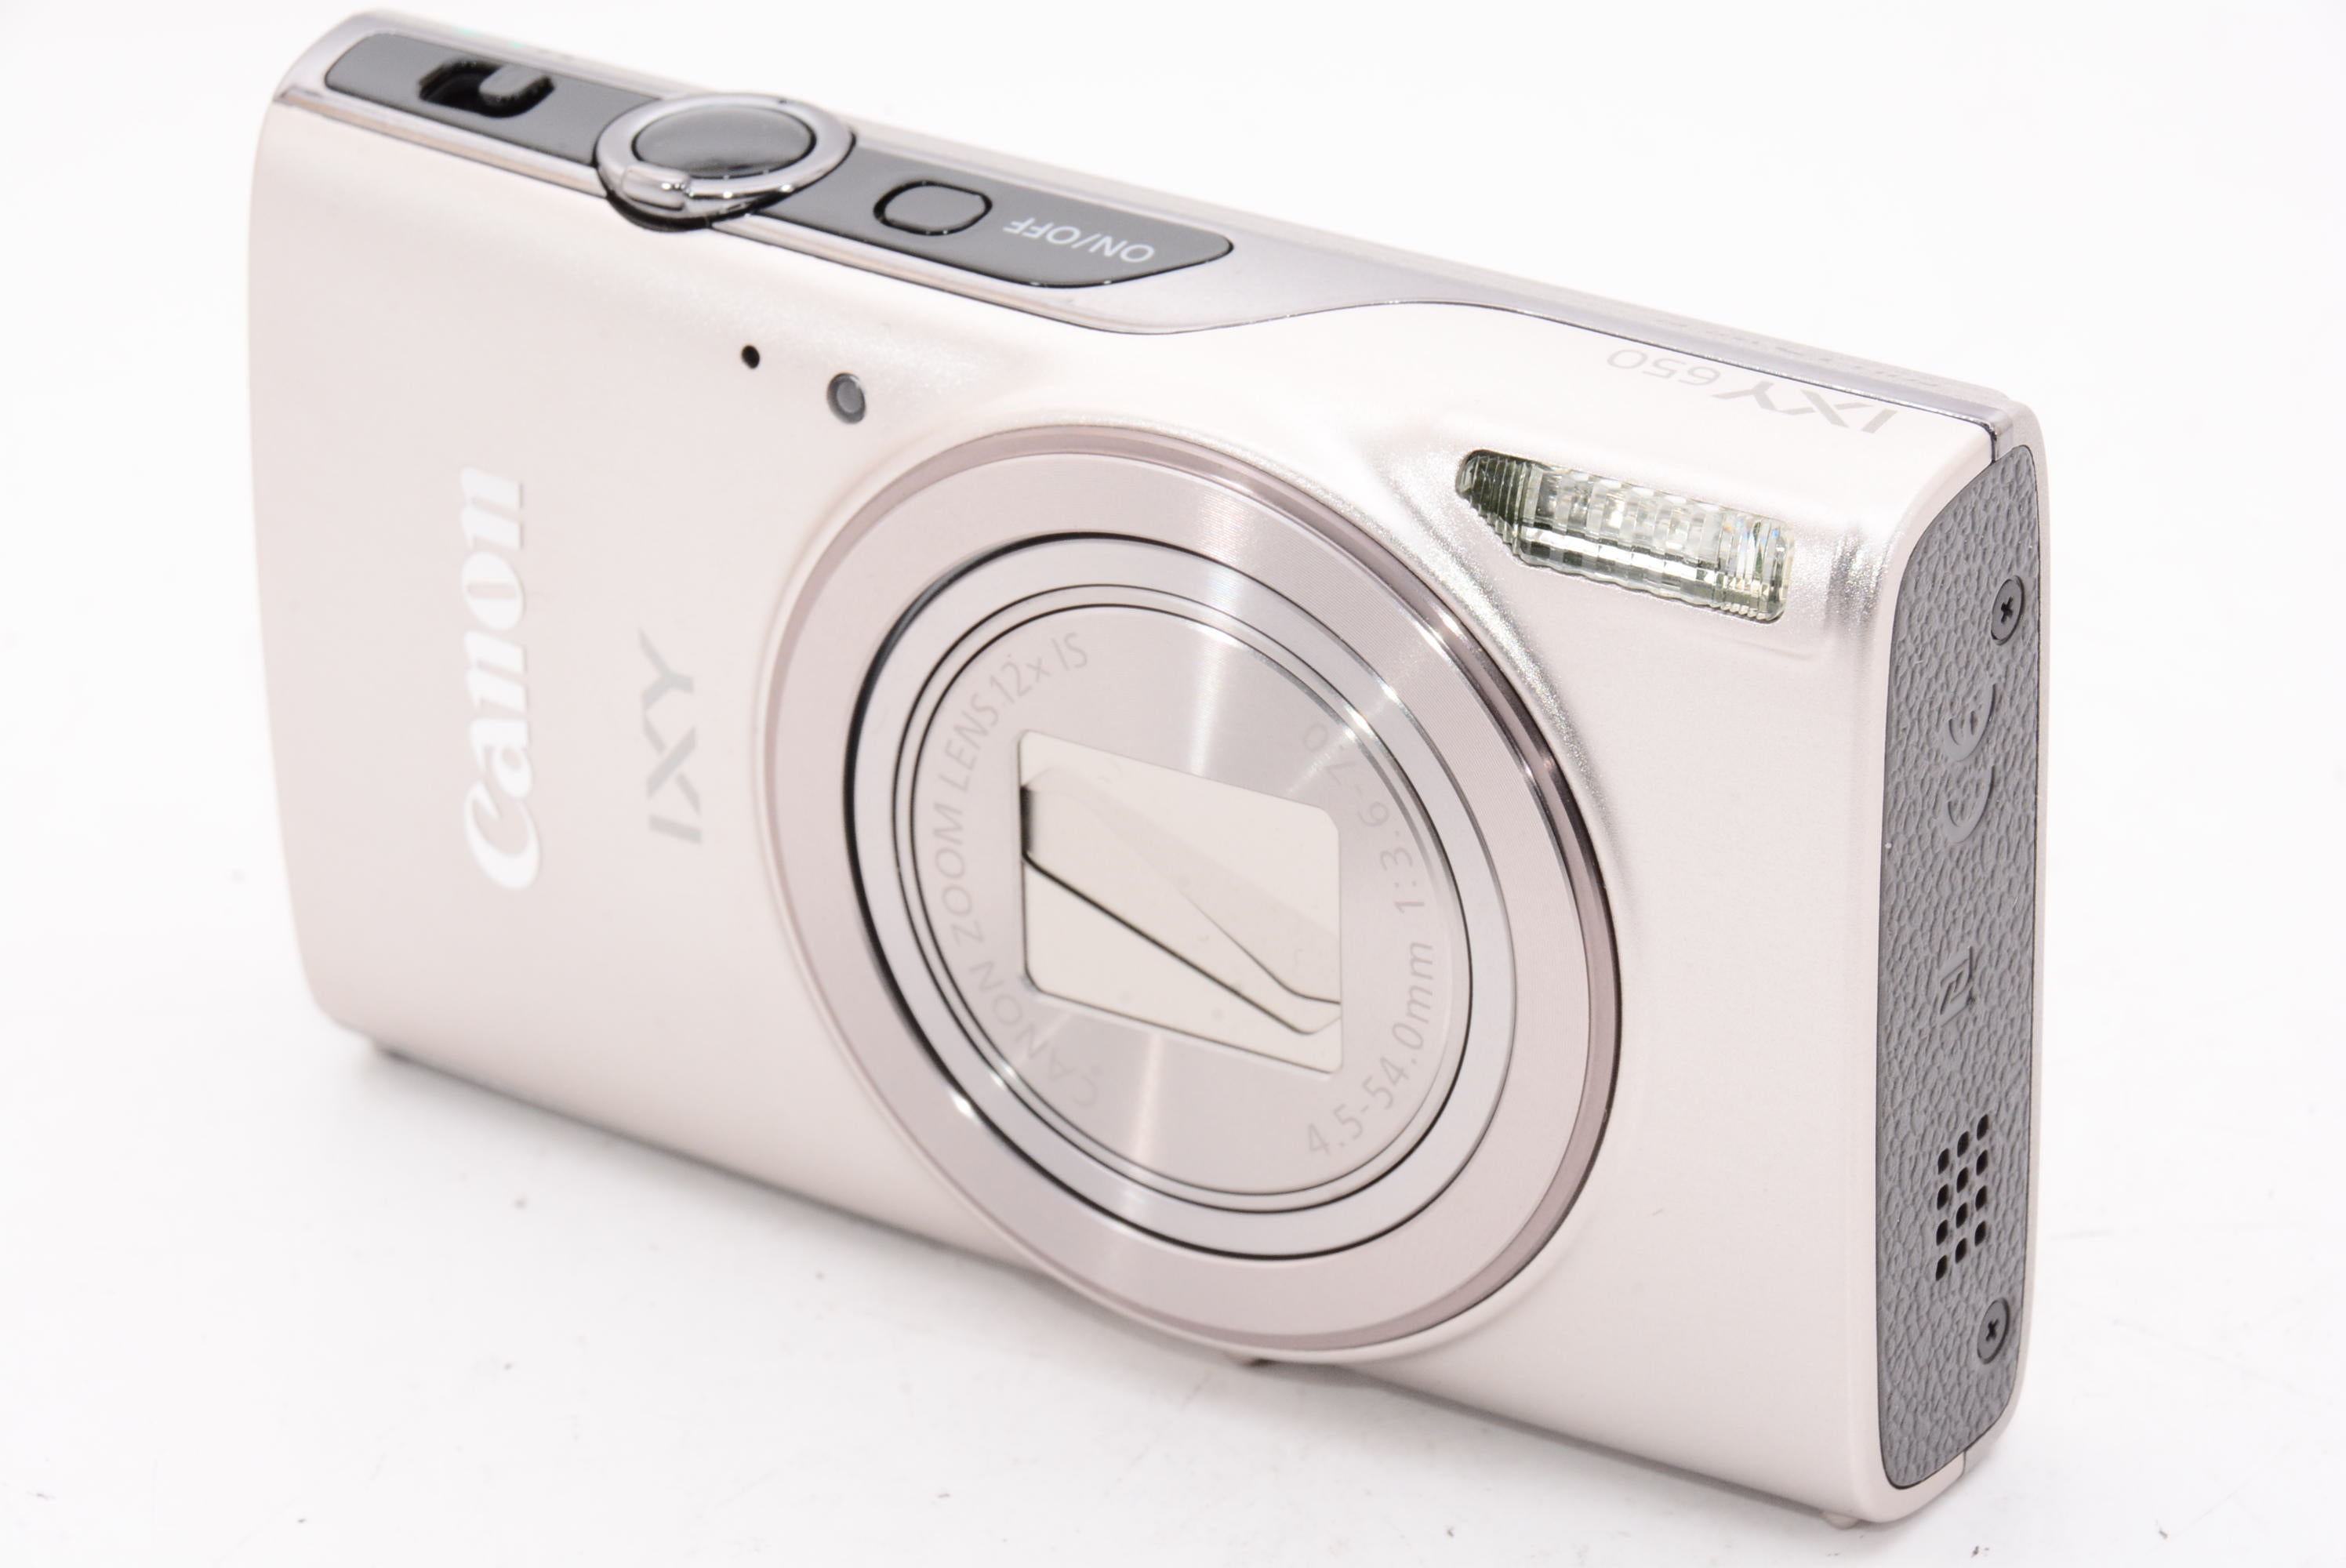 外観特上級】Canon コンパクトデジタルカメラ IXY 650 シルバー 光学12